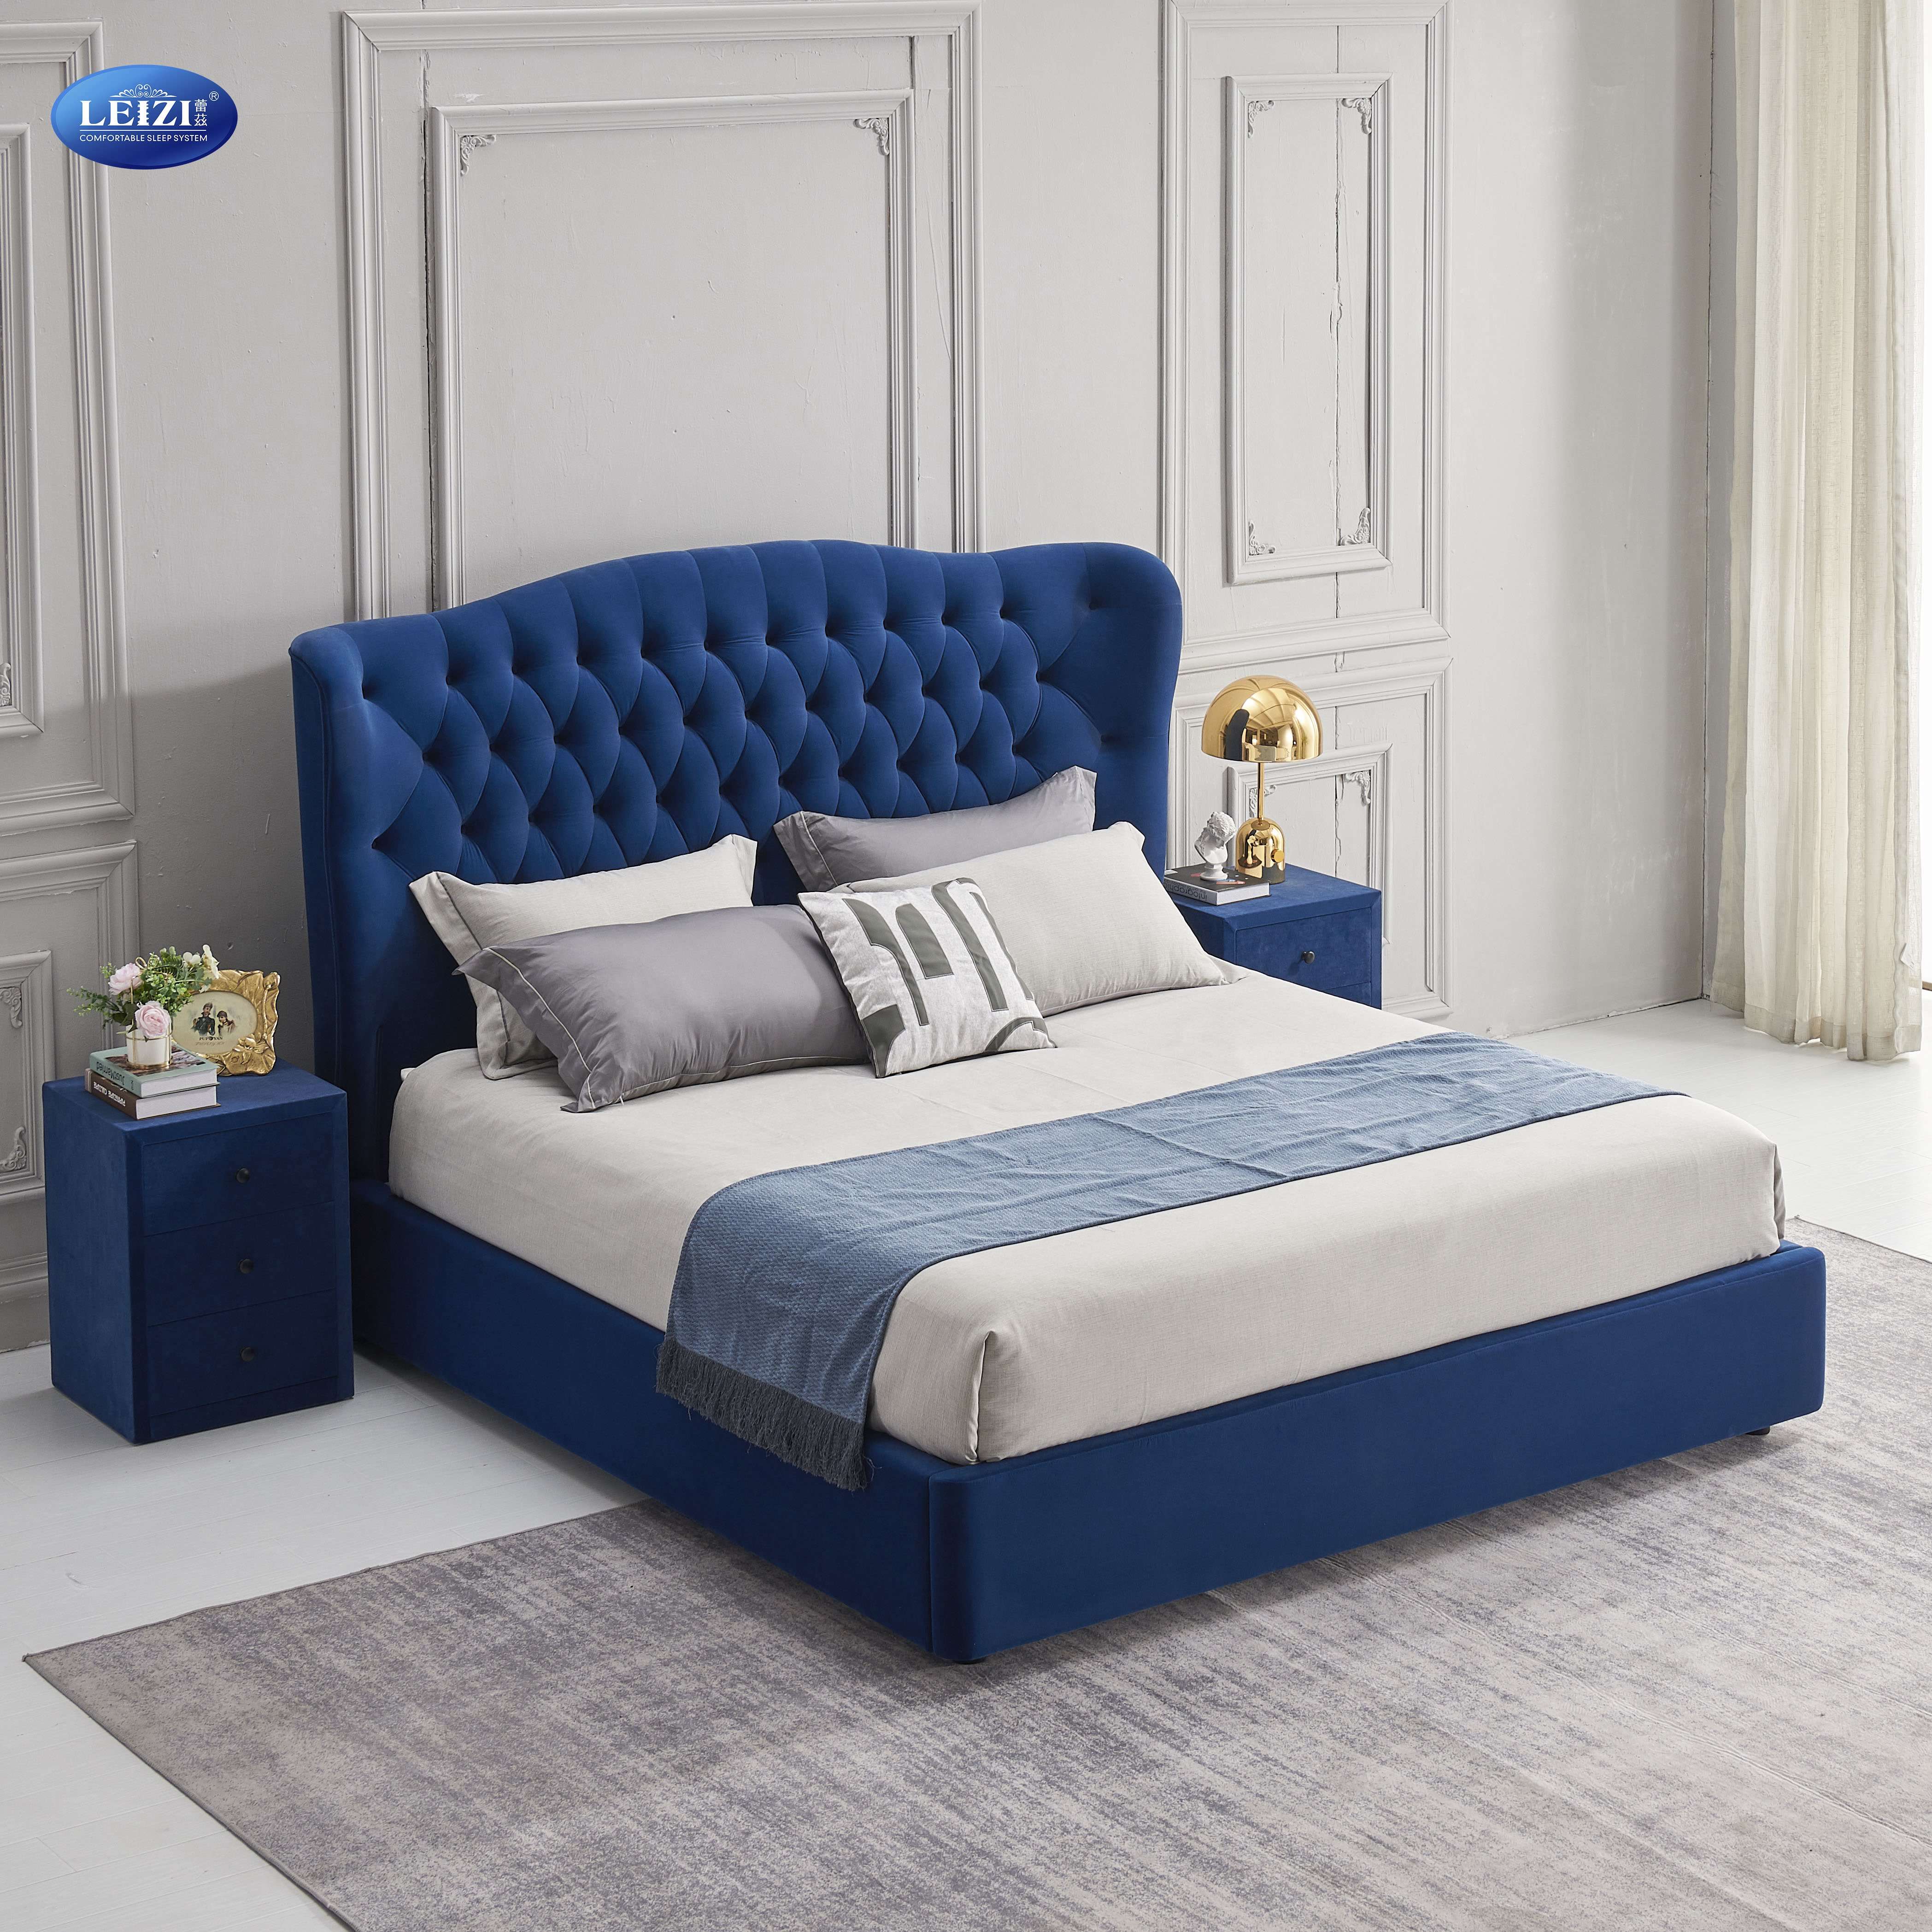 Modern Blue Tufted Velvet Bed Frame Gas Lift Storage For Luxury Bedroom | B2201